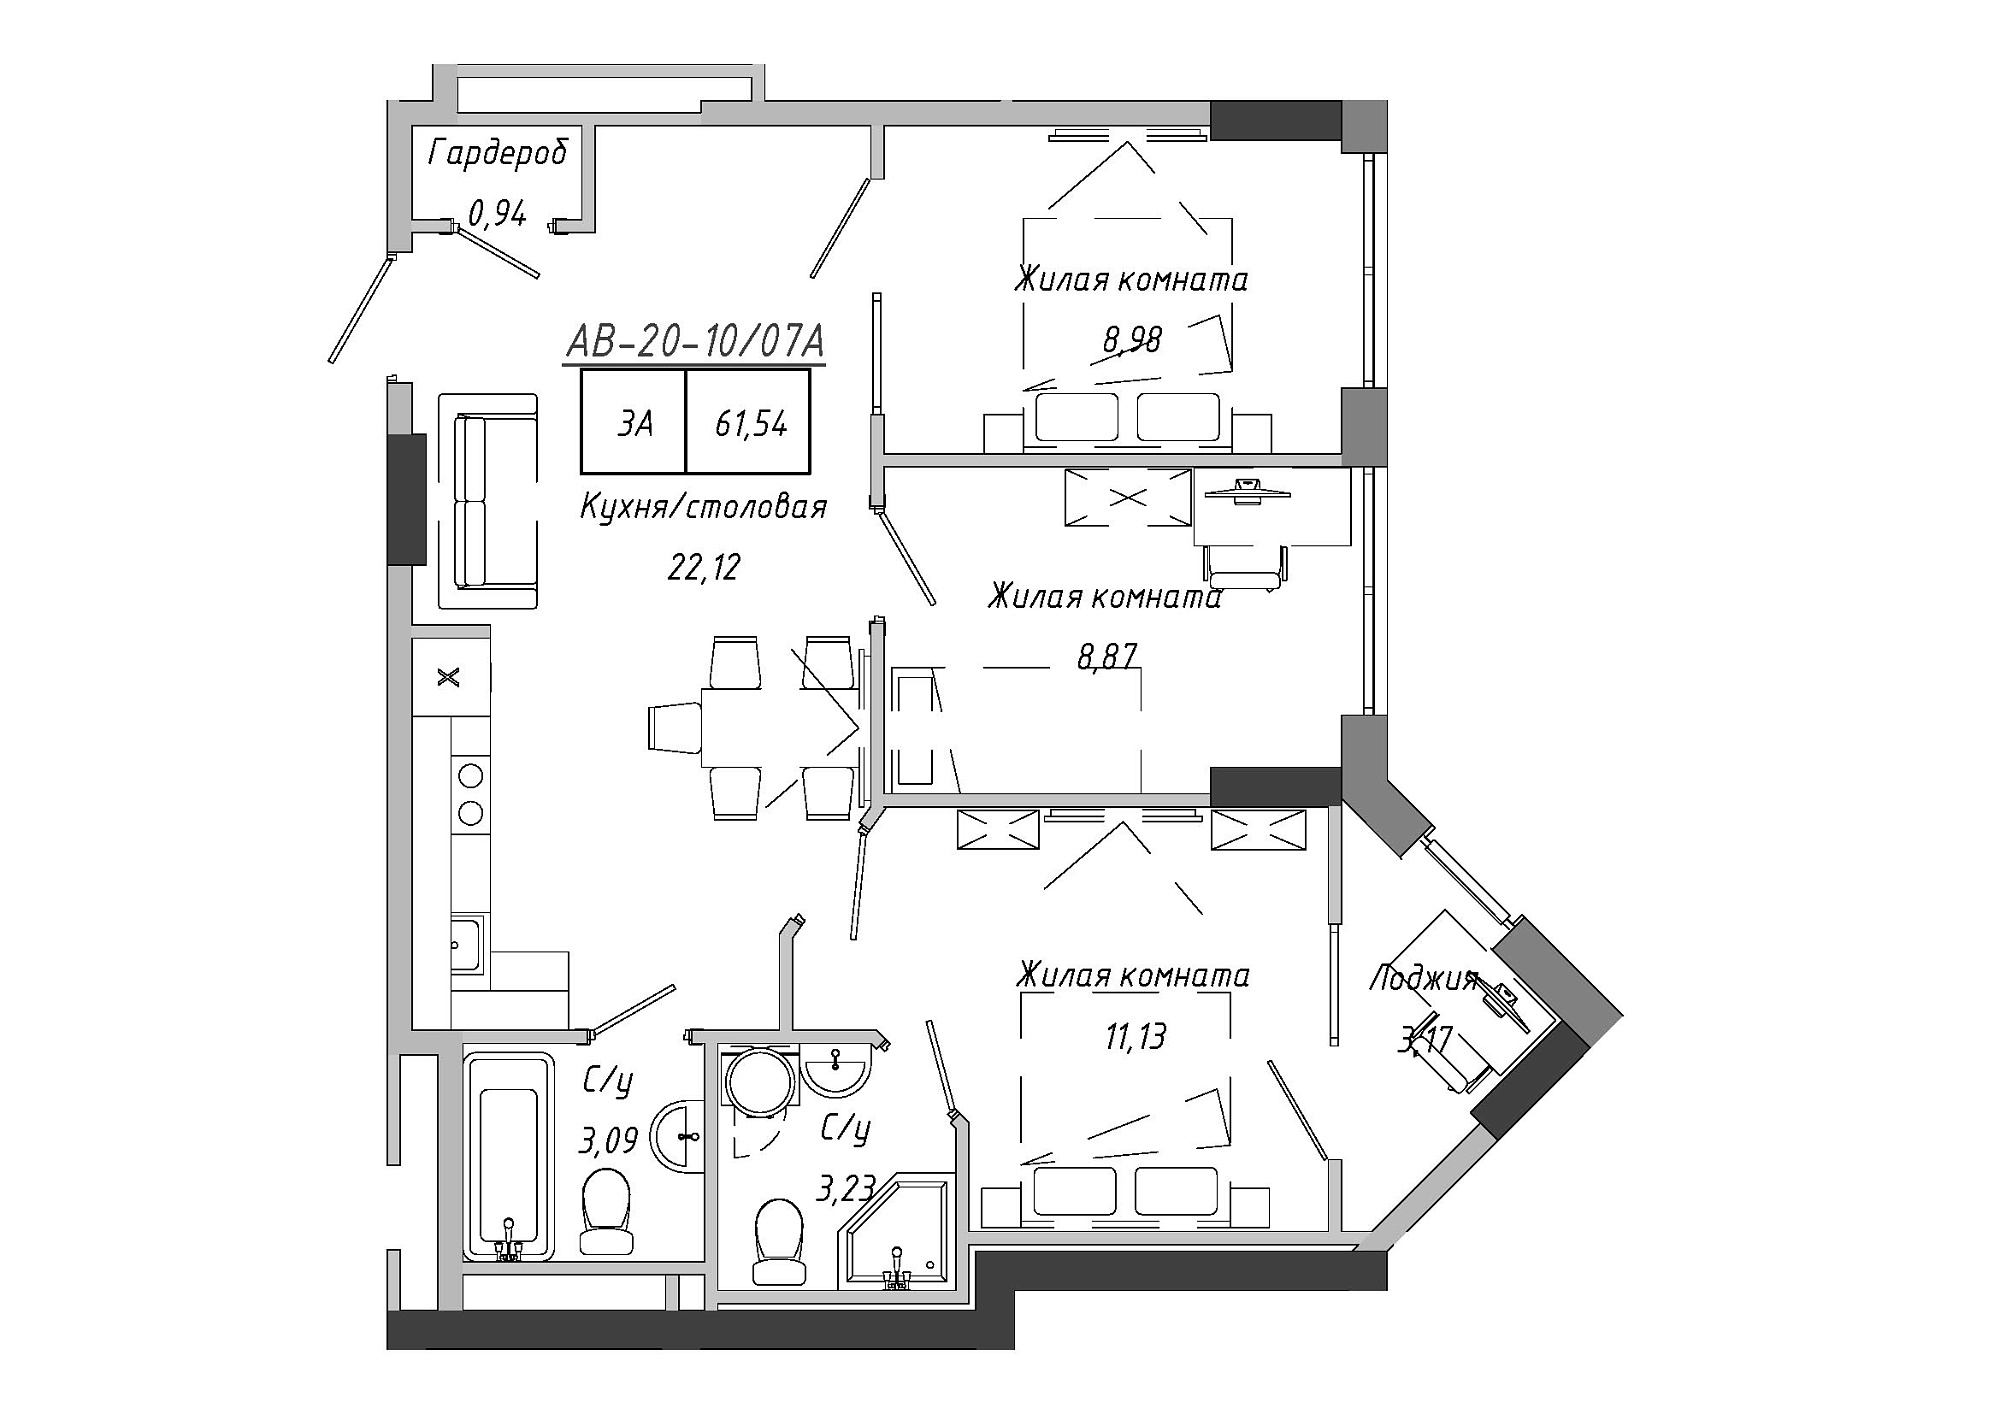 Планировка 3-к квартира площей 62.67м2, AB-20-10/0007а.